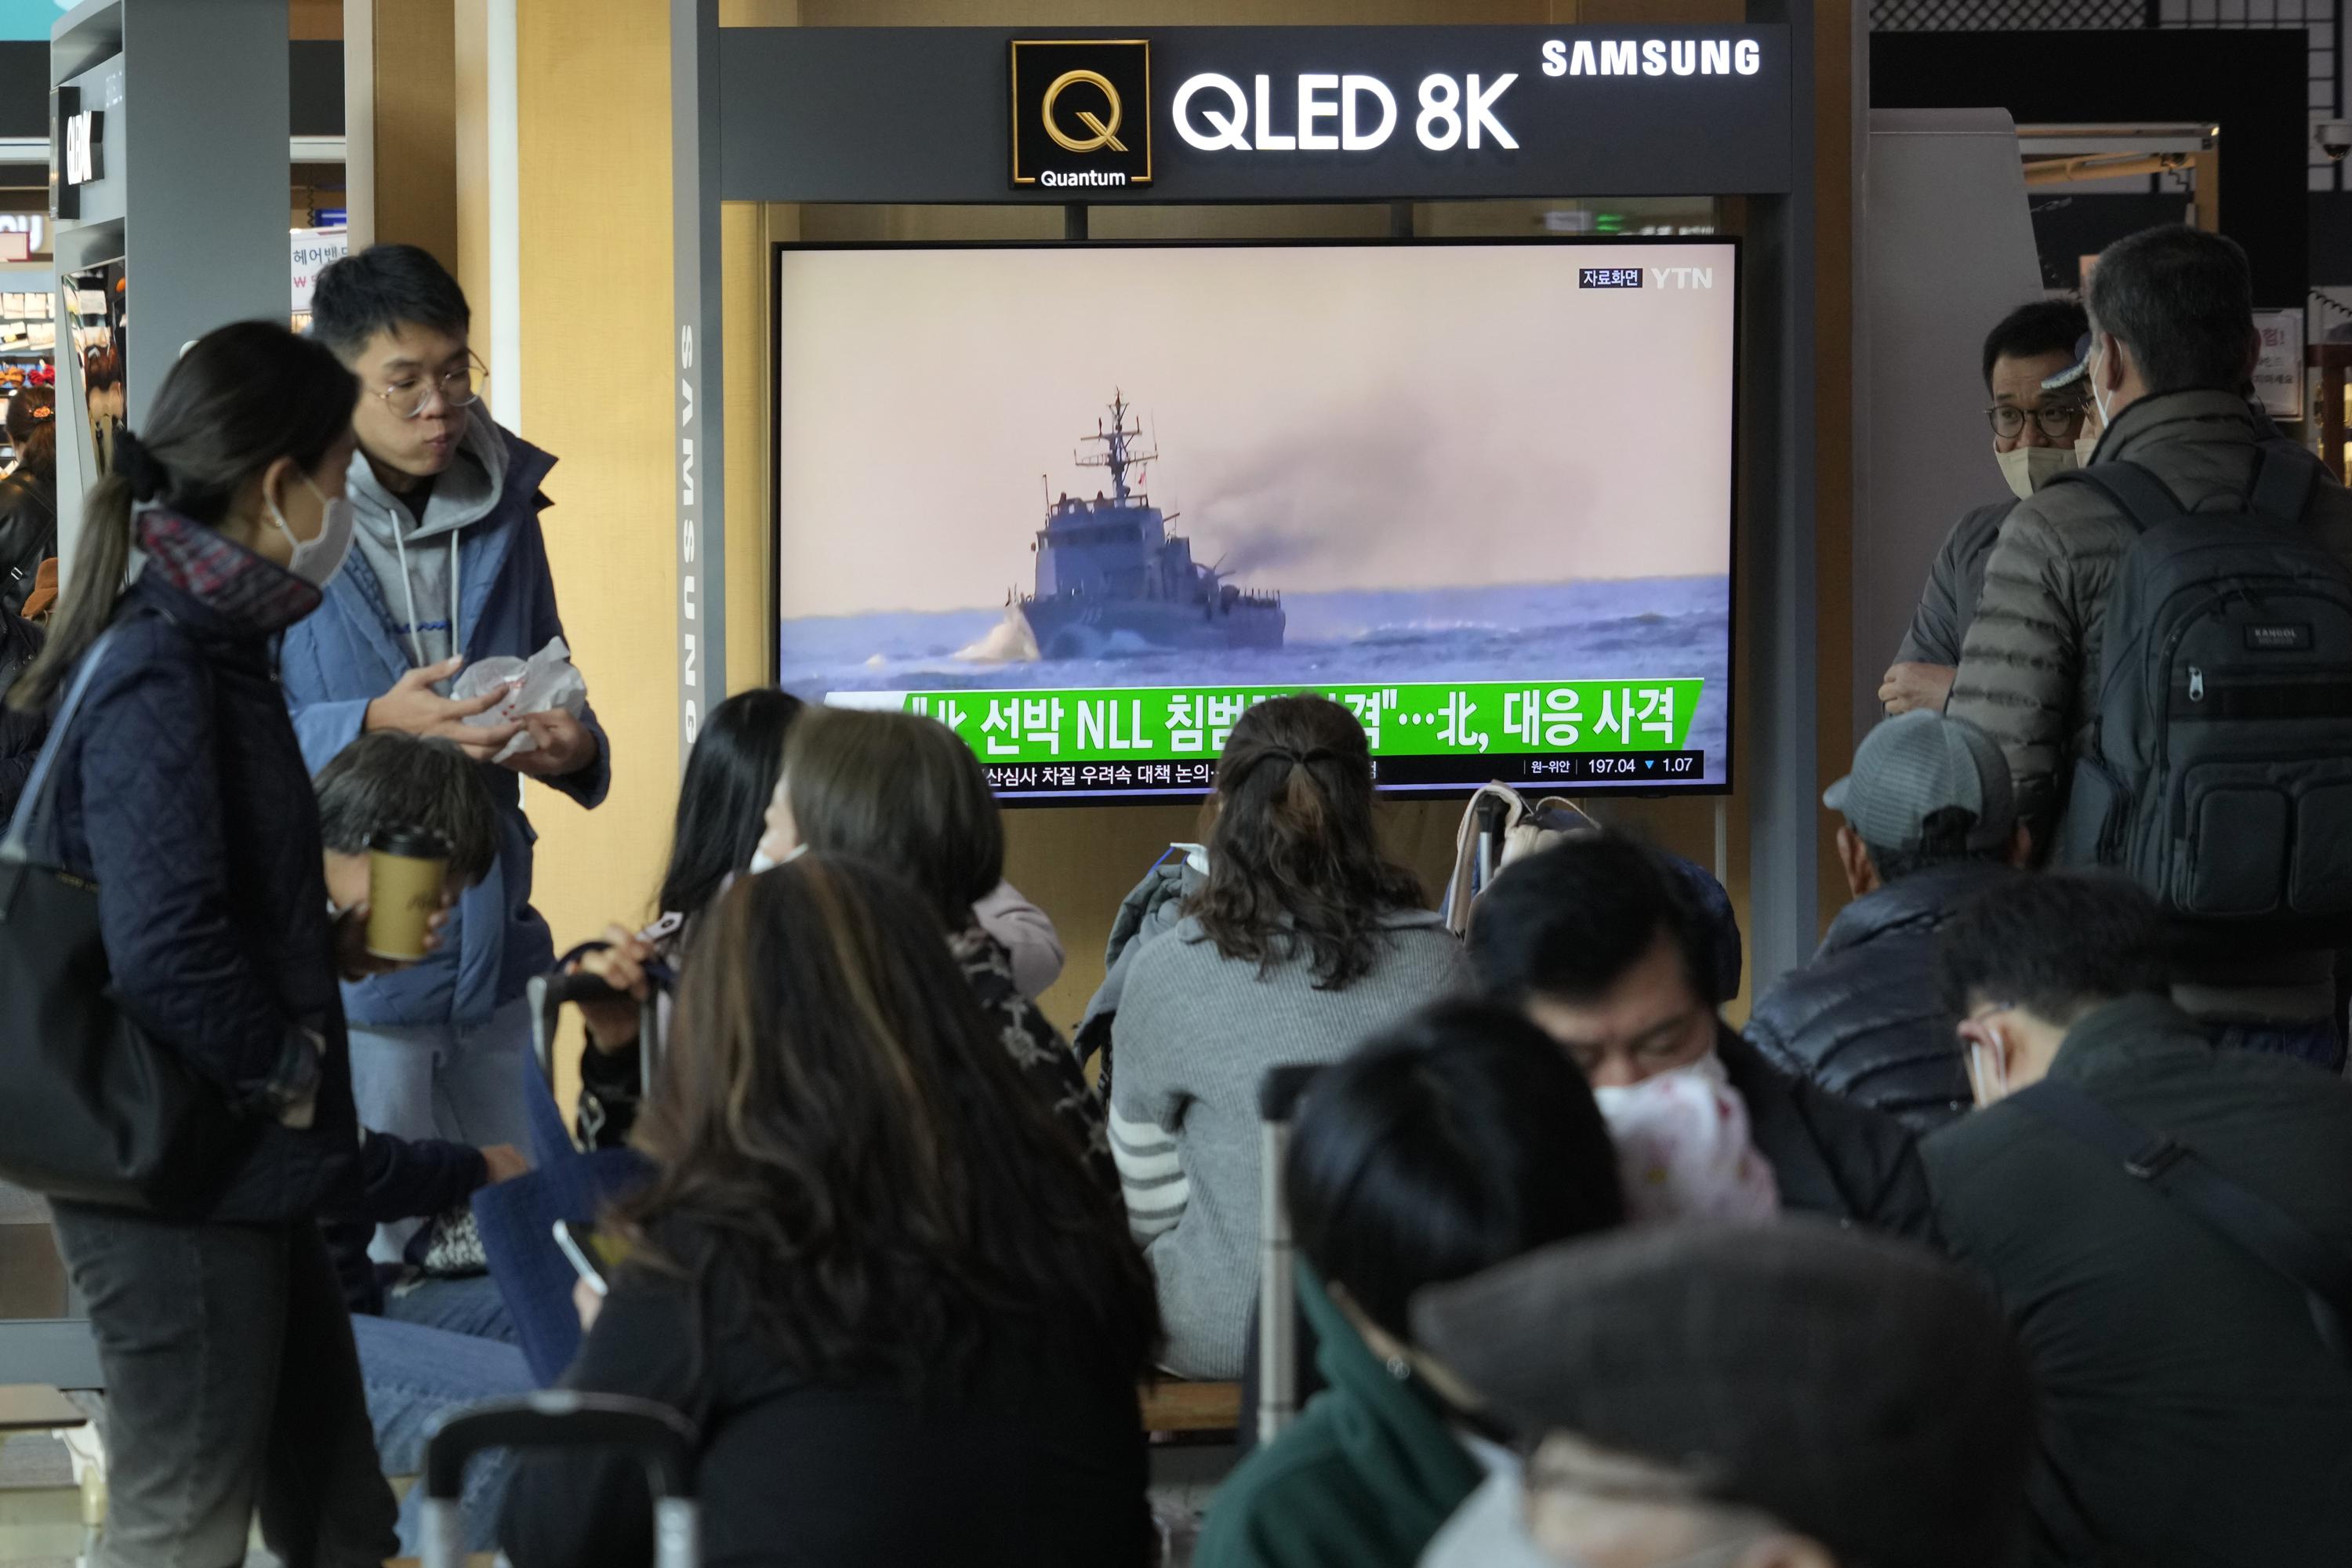 2 Koreje si vyměnily varovné výstřely podél sporné námořní hranice